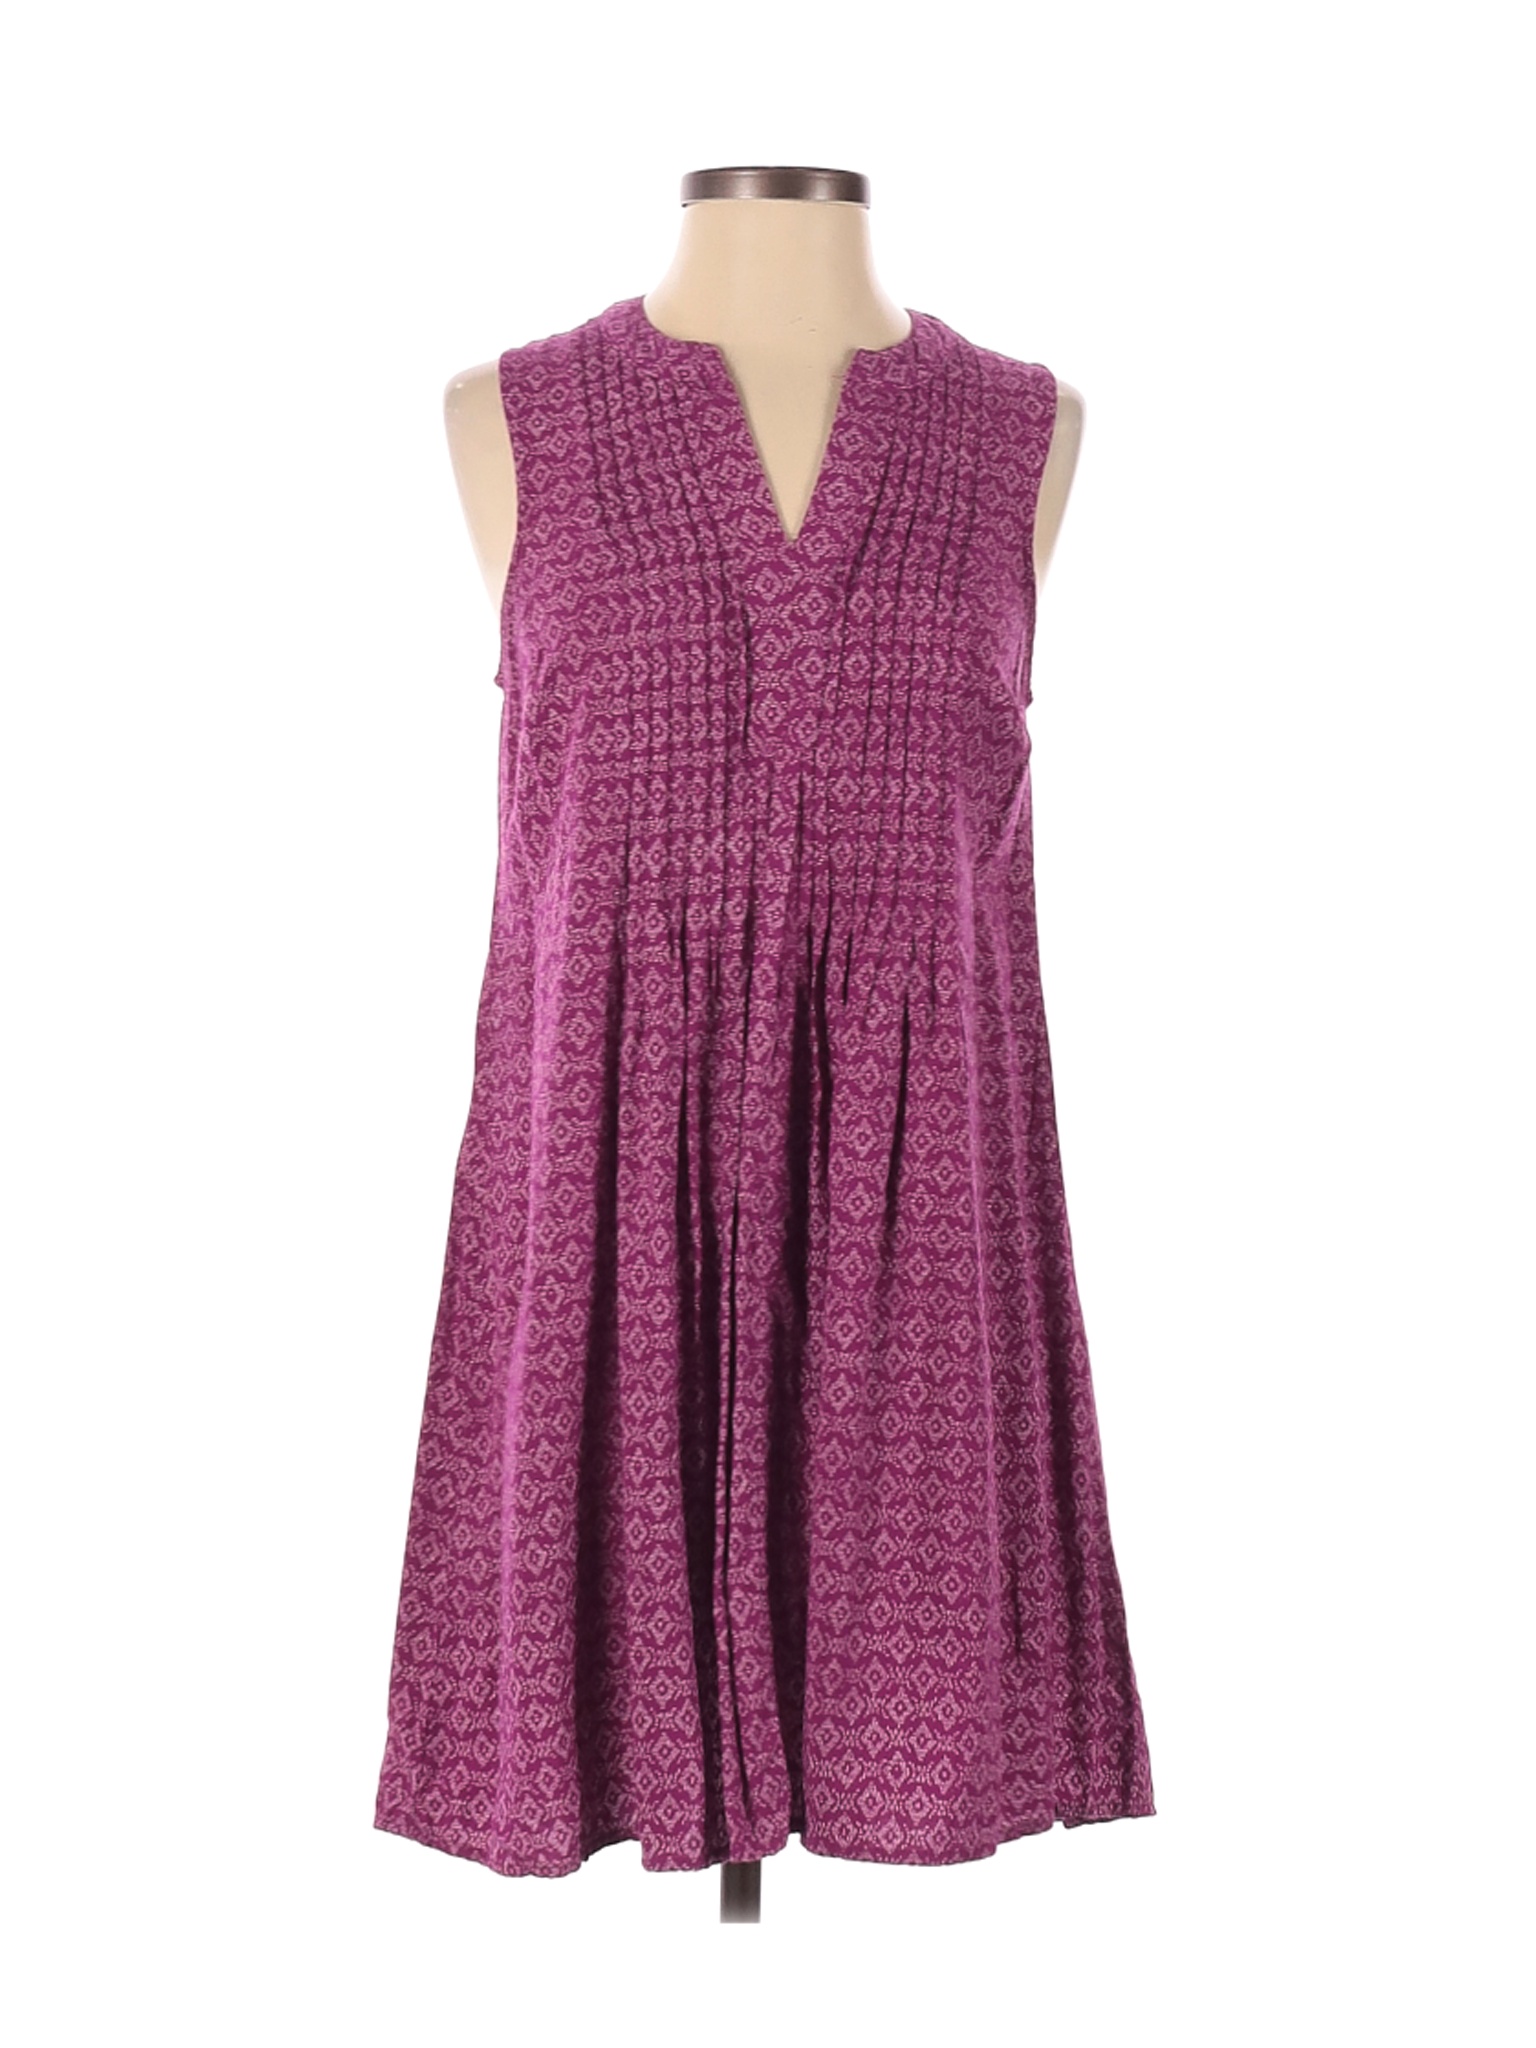 Old Navy Women Purple Casual Dress S | eBay